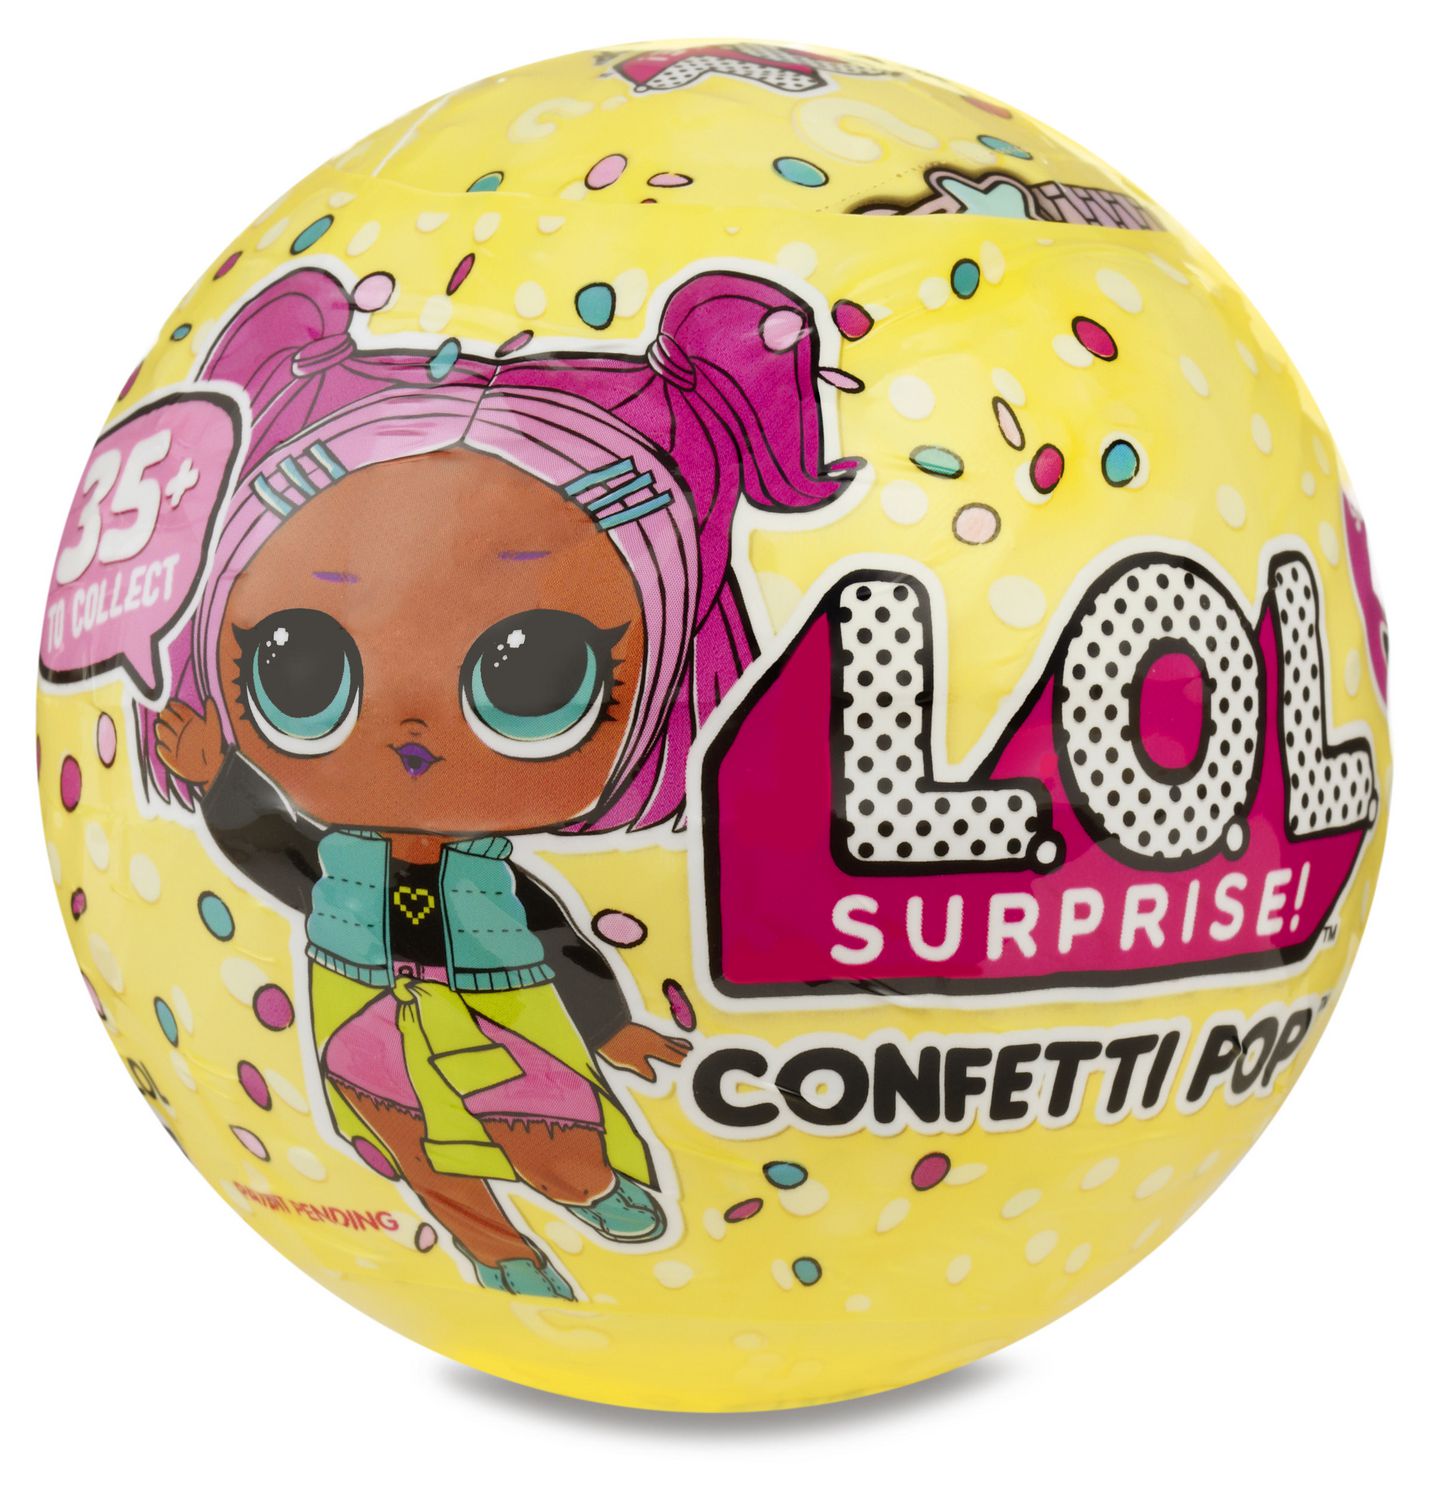  LOL Surprise Confetti Pop  Series 3 1 Walmart Canada